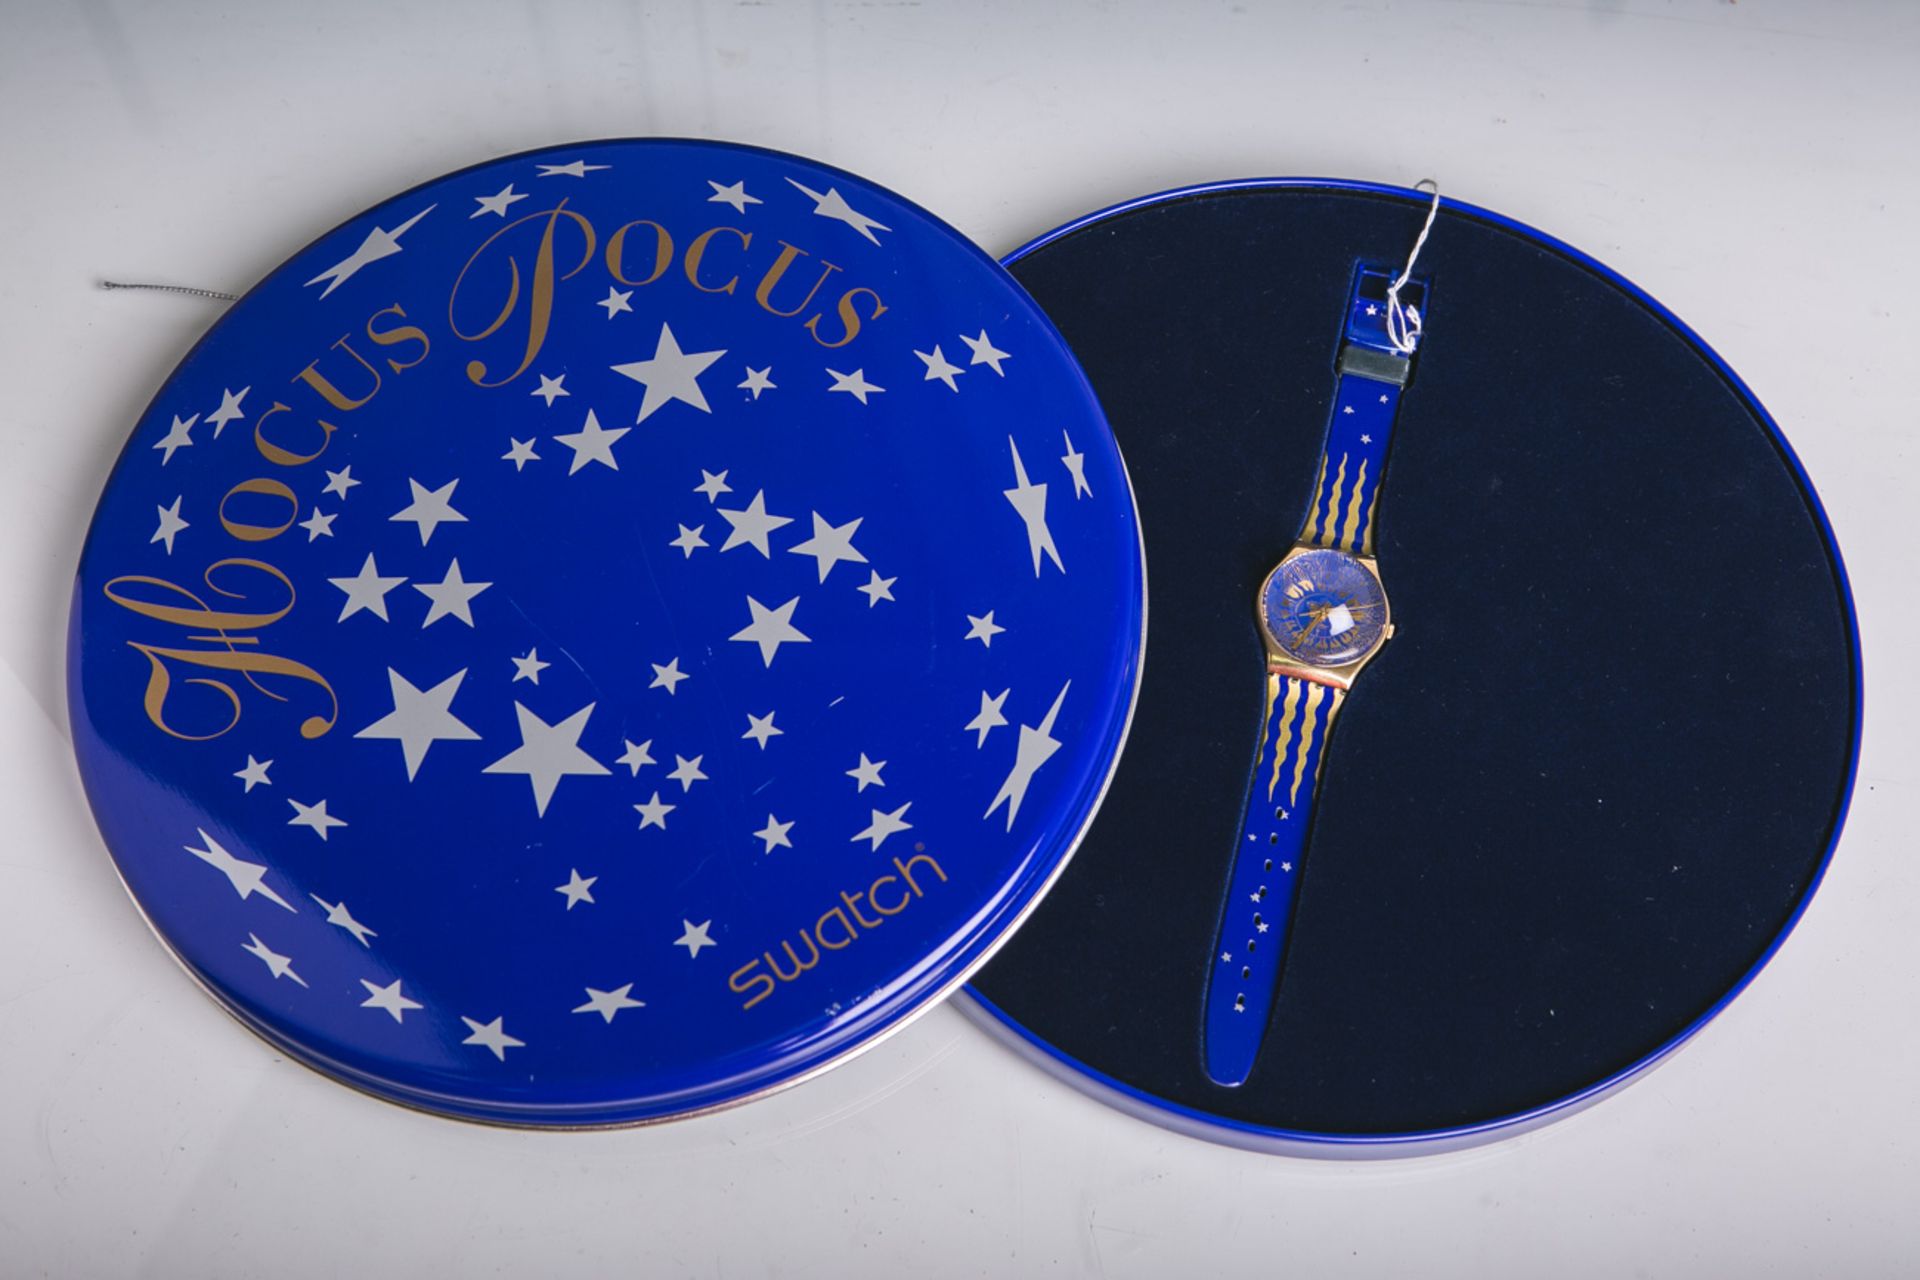 Swatch-Armbanduhr "Hocus Pocus" (1991), in original Verpackung.